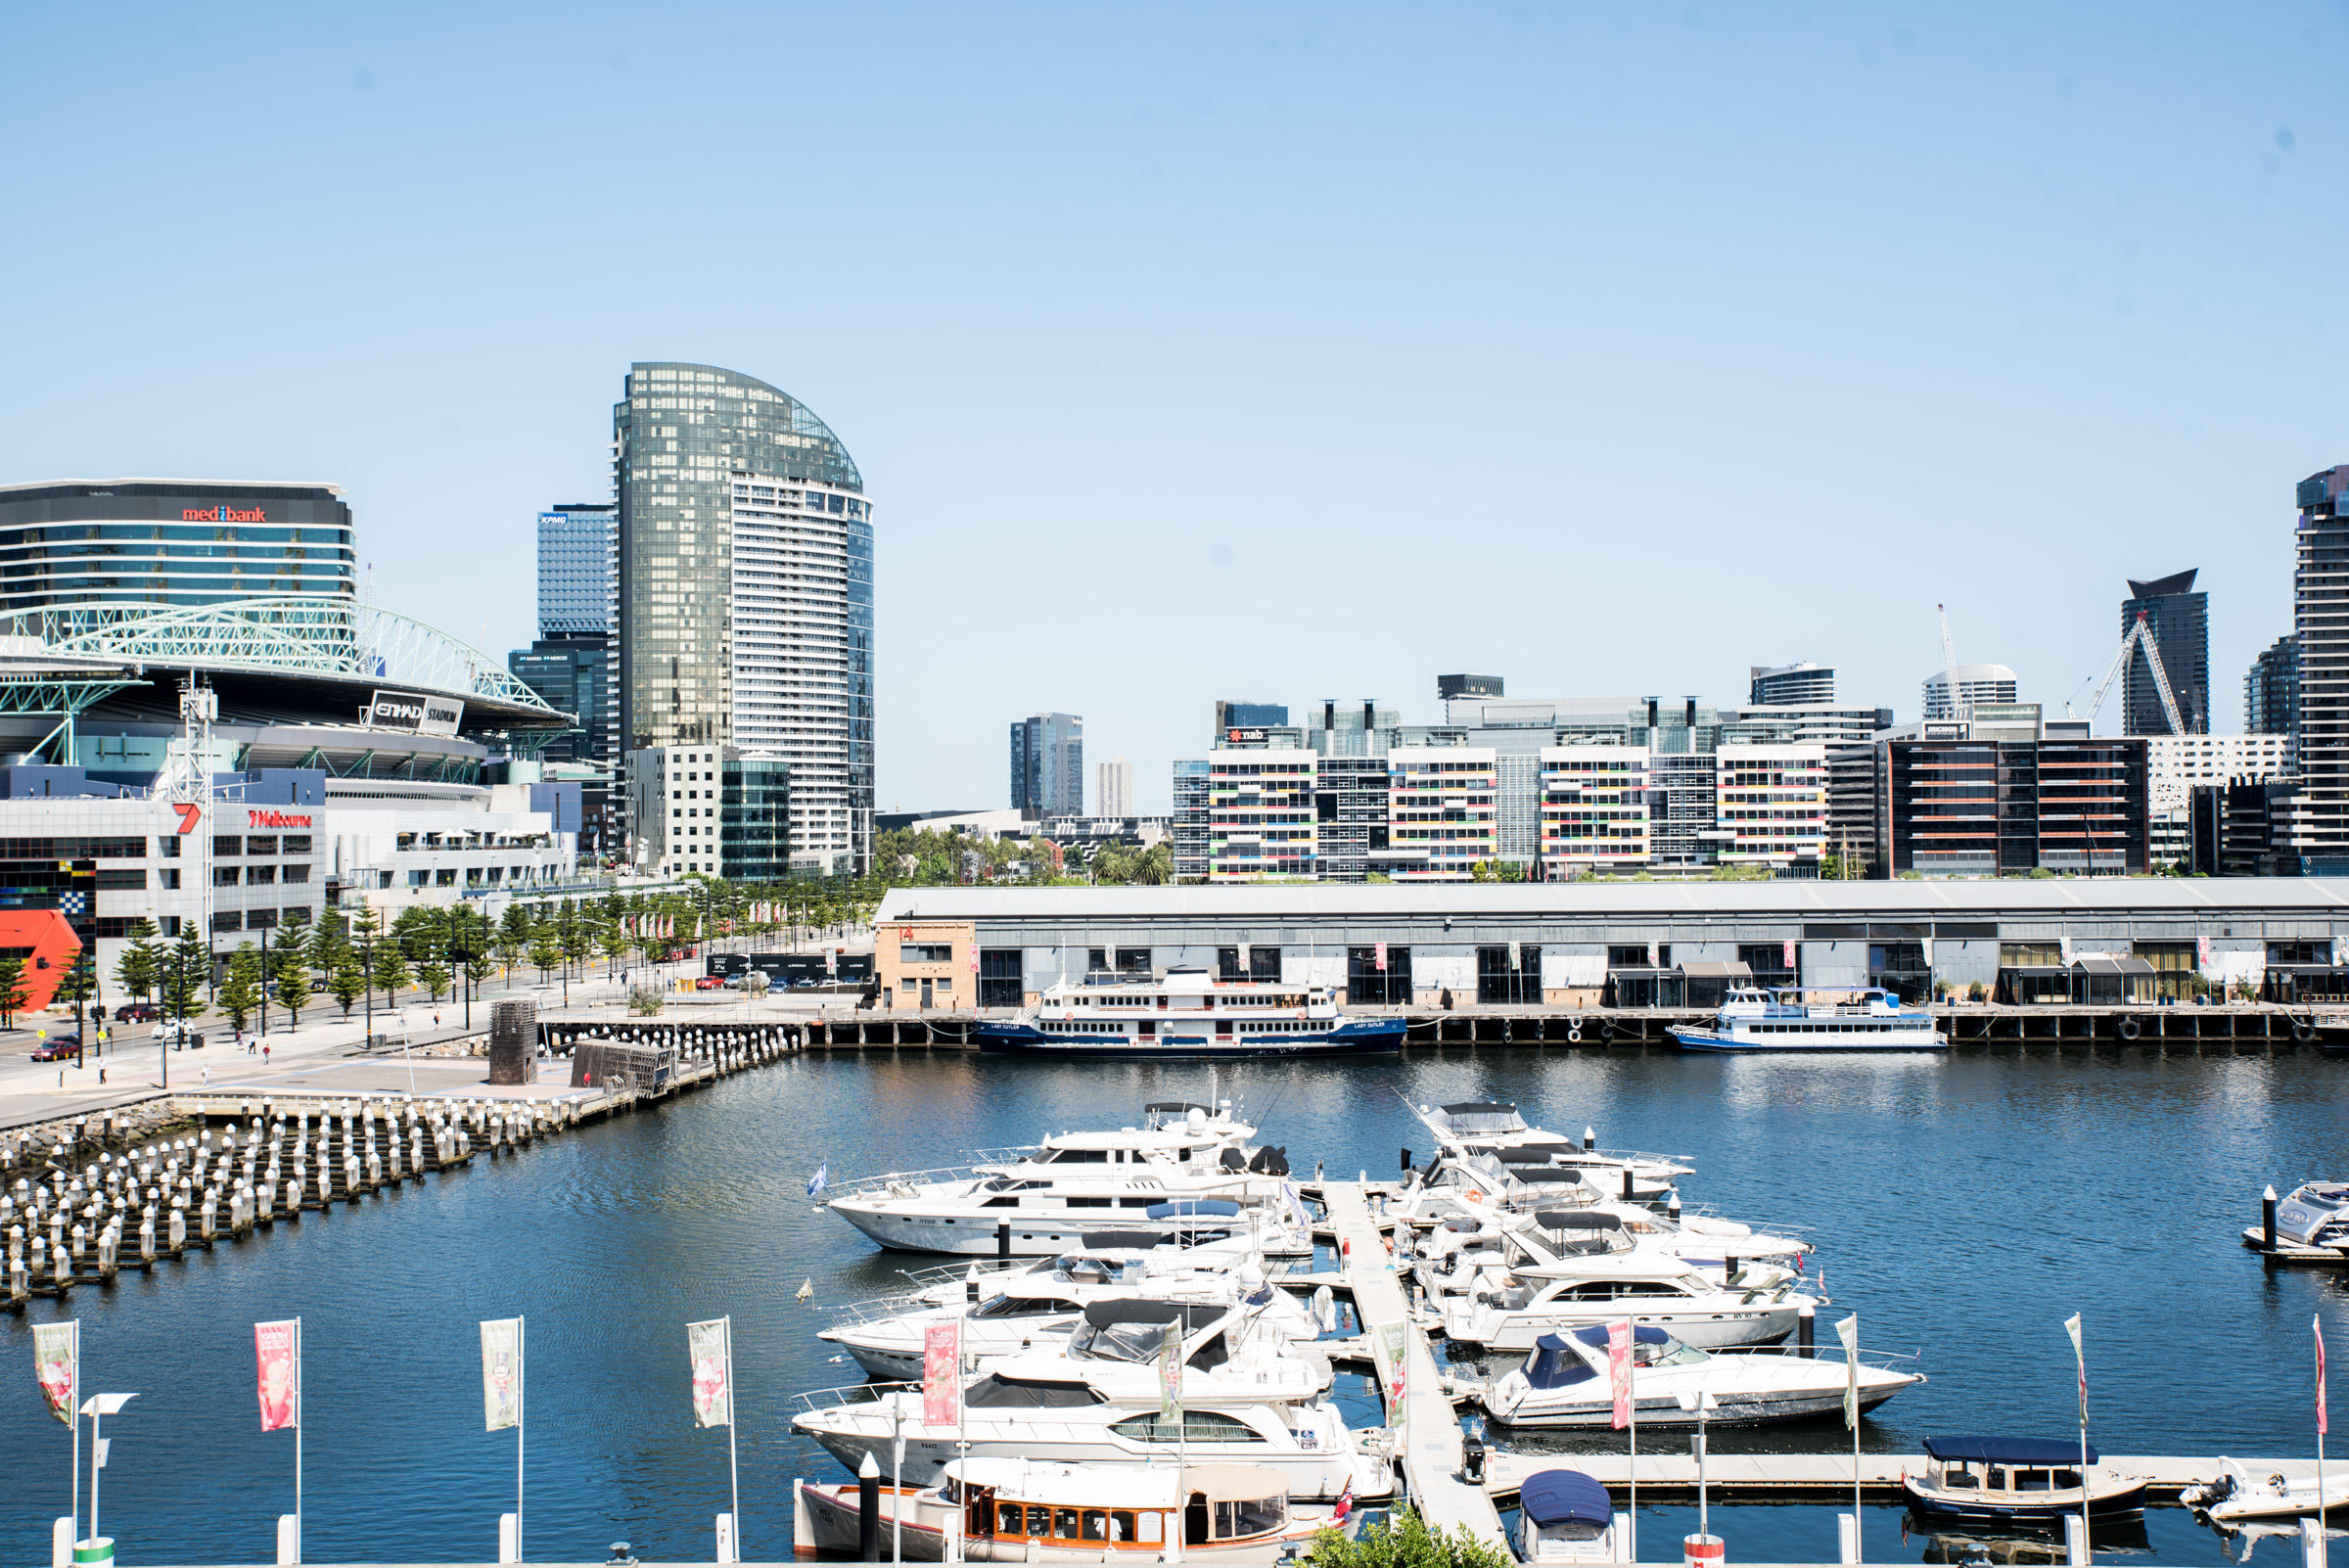 Images The Sebel Melbourne Docklands